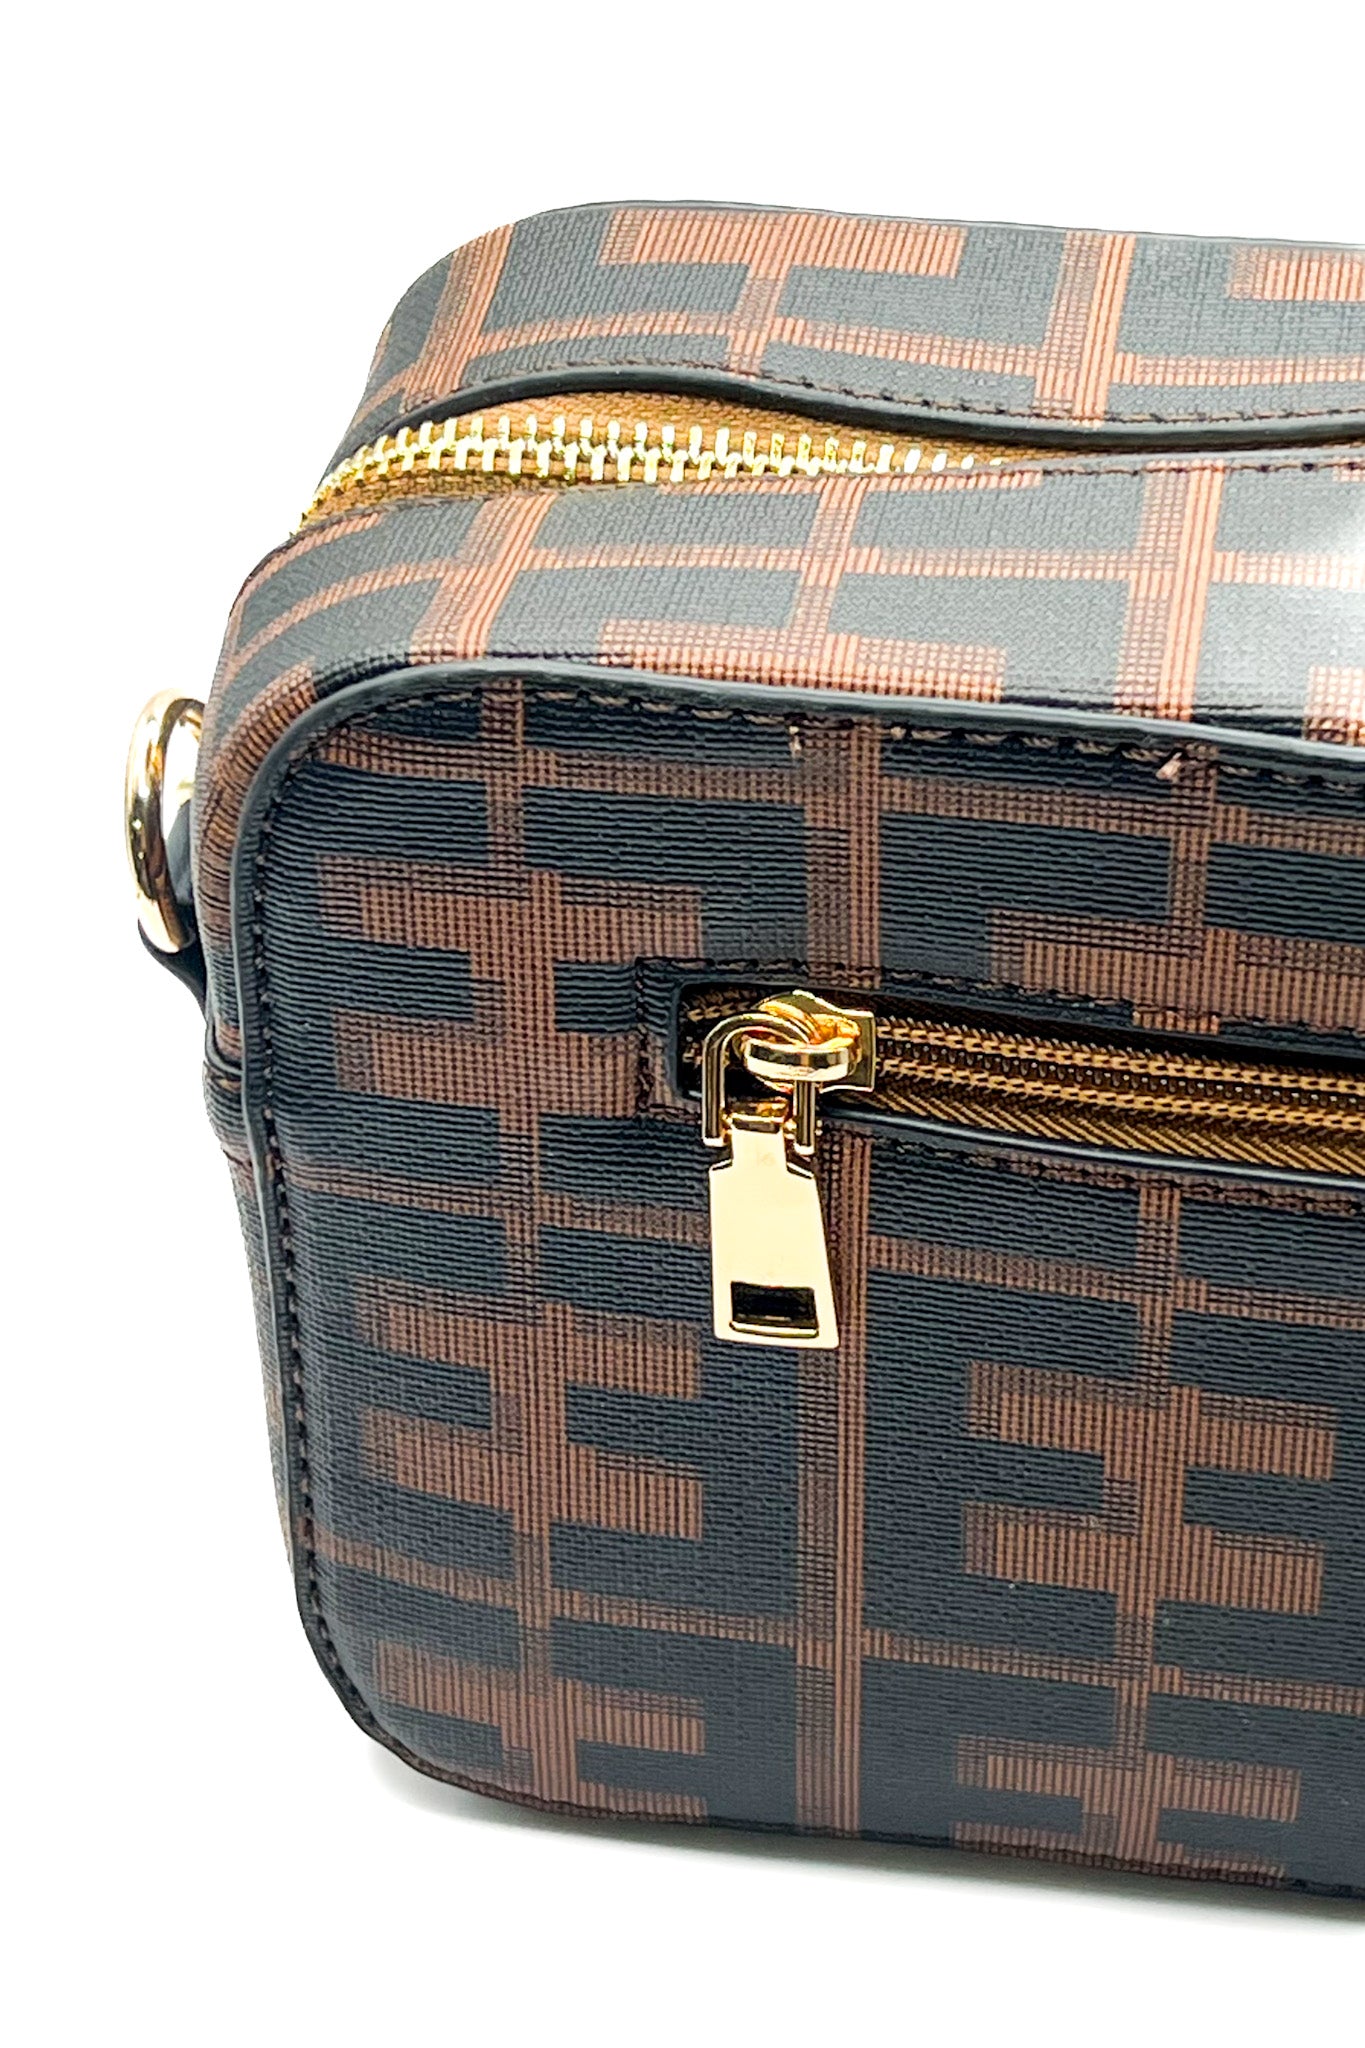 FF Designer Inspired Handbag